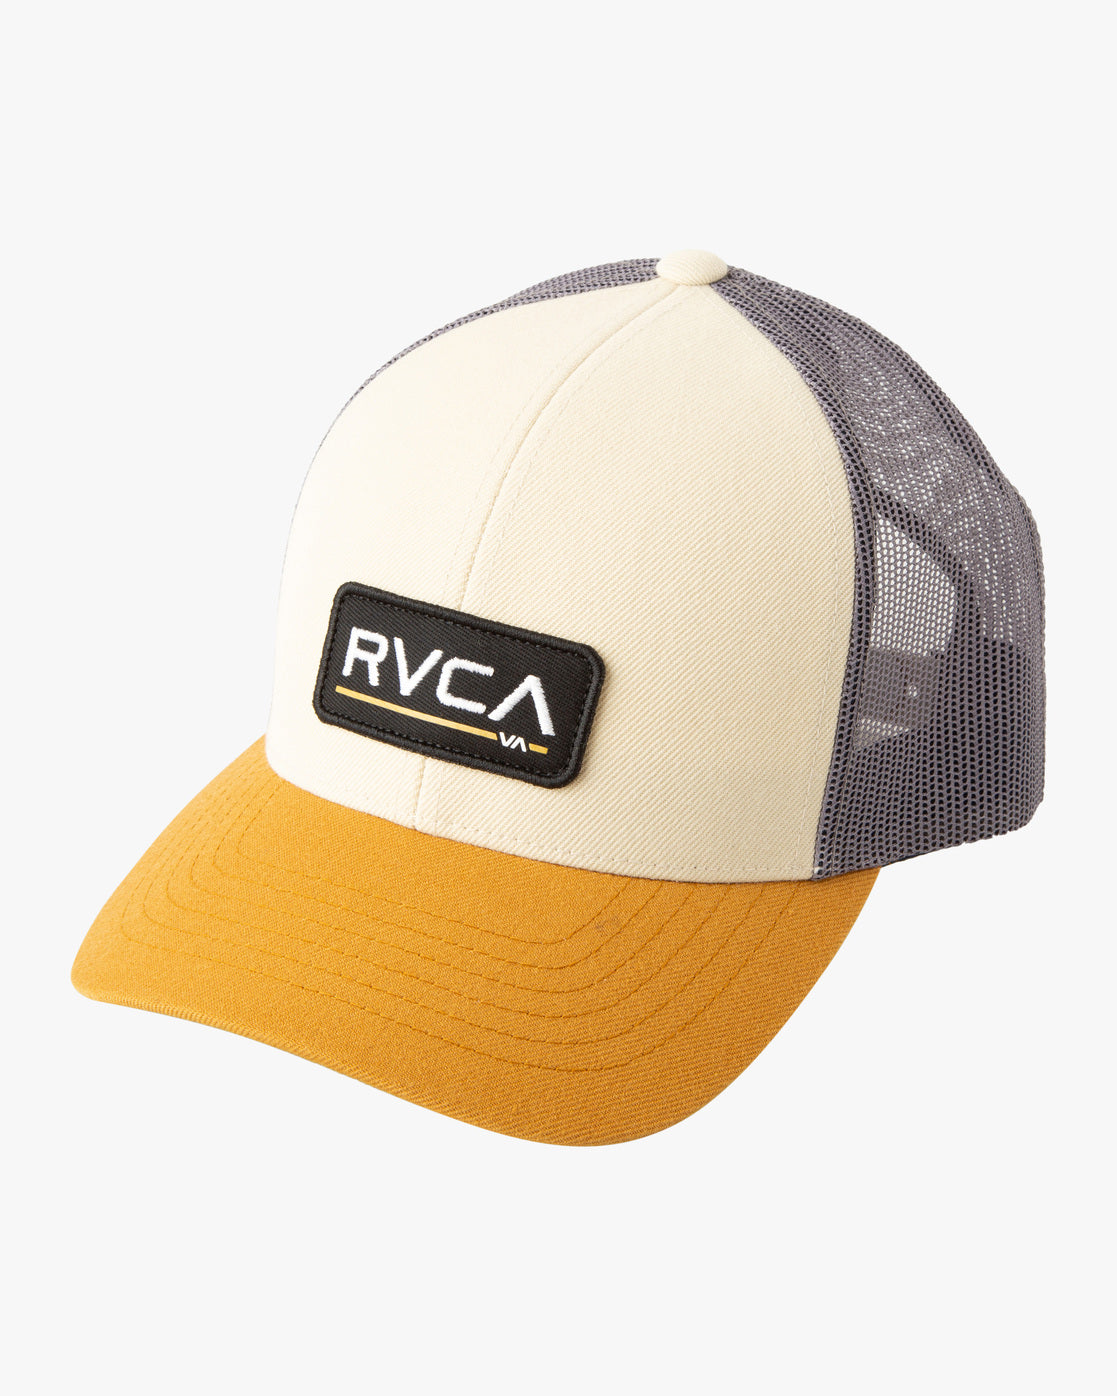 RVCA Ticket trucker iii